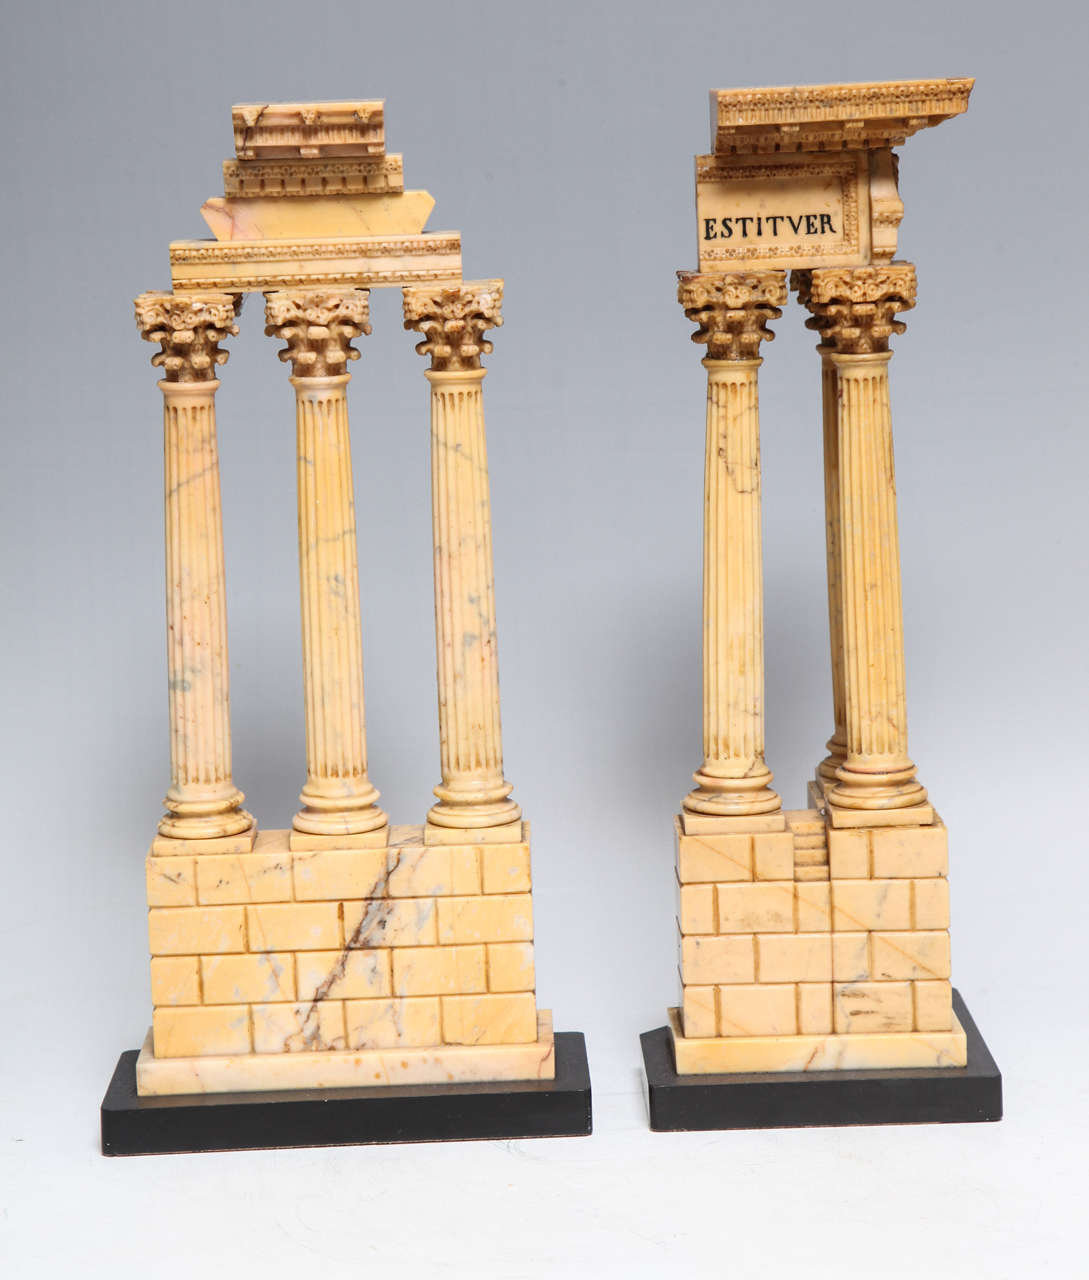 Très belle paire de maquettes en marbre de Sienne de la période néoclassique romaine du Grand Tour, représentant le temple de Castor et Pollux et le temple de Vespasien, datant du début des années 1800.

Aux 18e et 19e siècles, l'éducation d'un